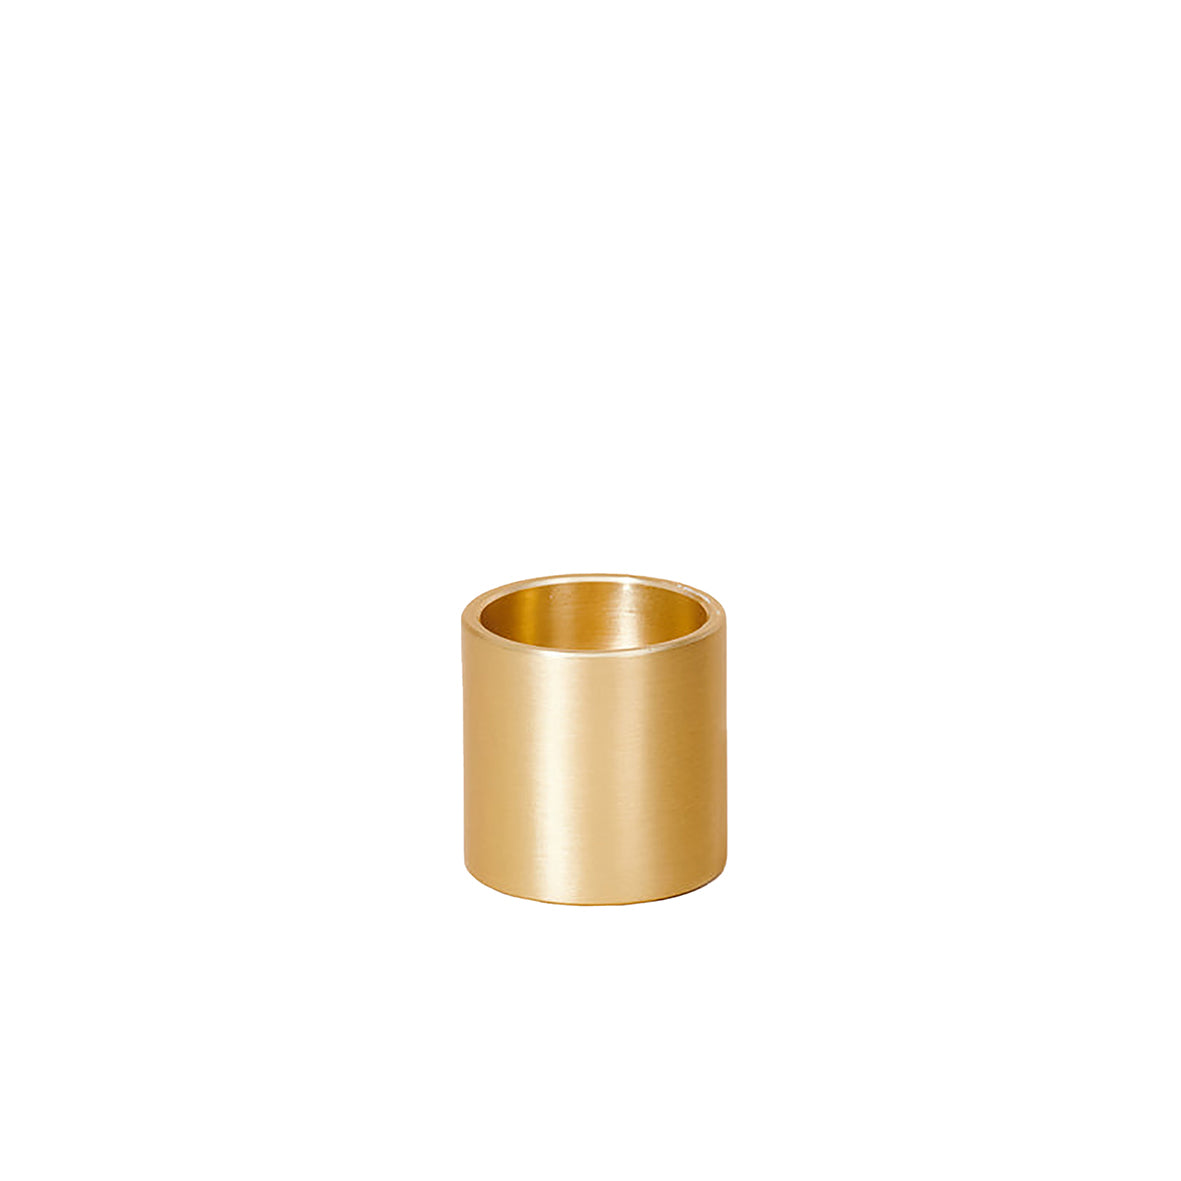 Column candle holder brass